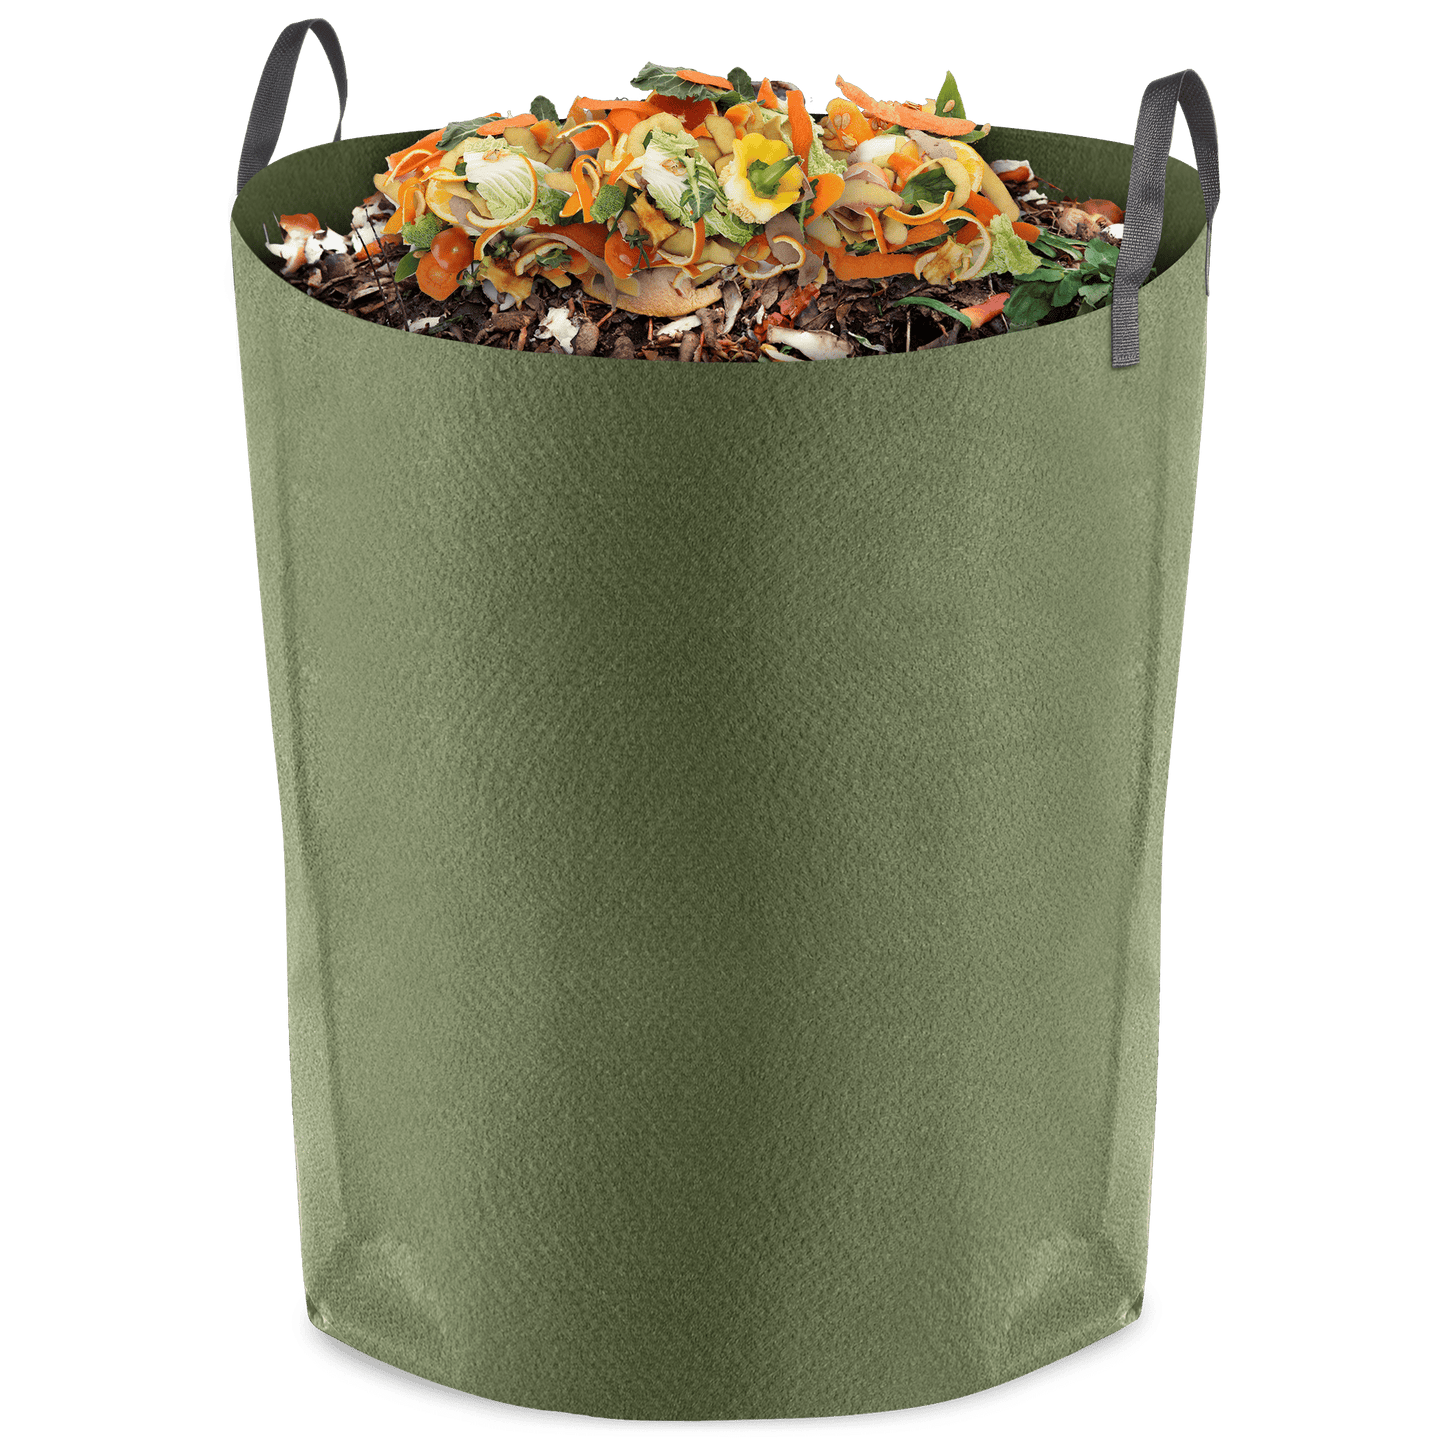 Compost Sak 50 gallons